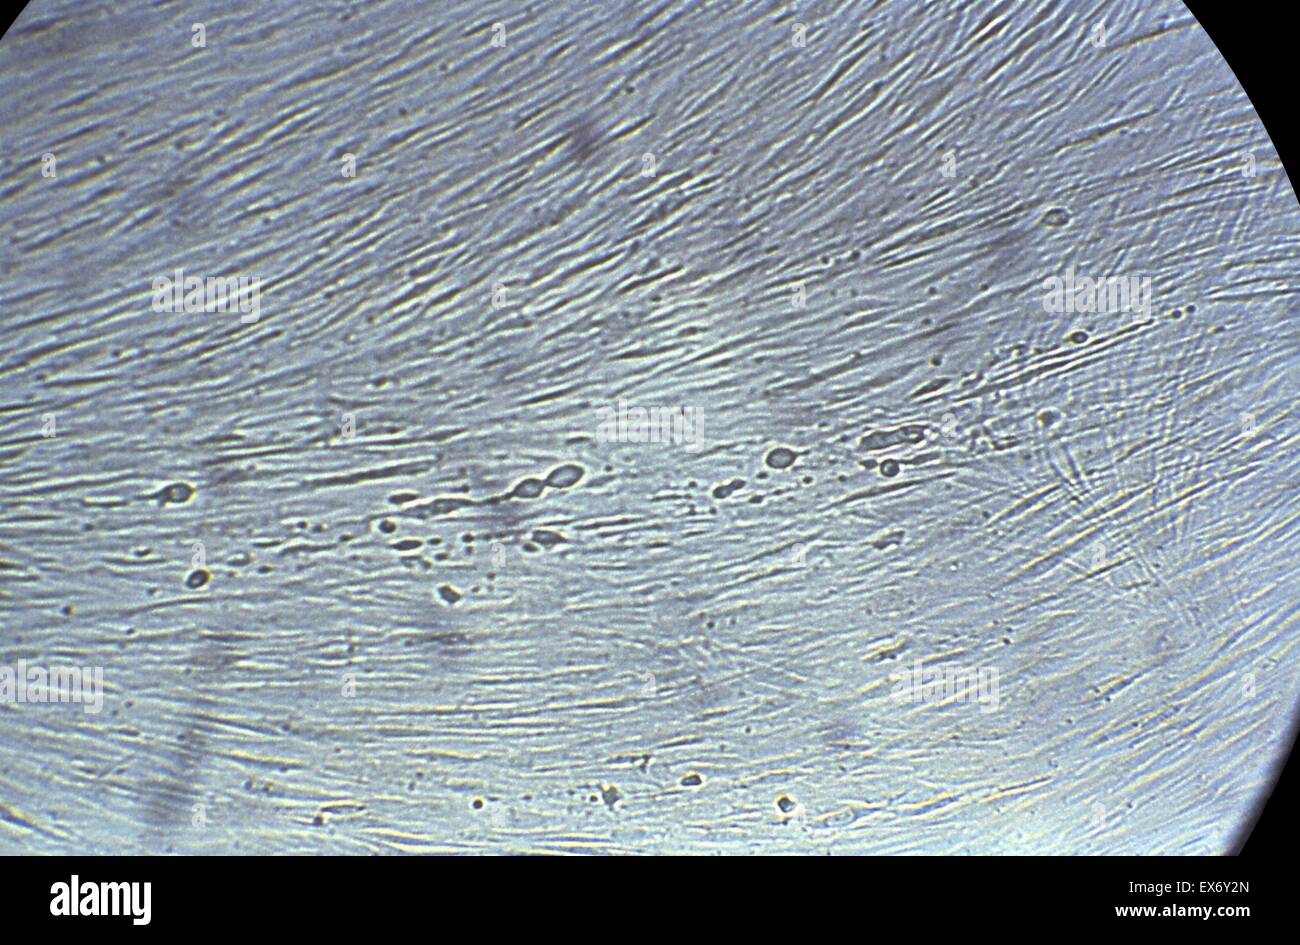 La fotomicrografia che raffigurano gli effetti istopatologica del virus herpes simplex su una coltura di cellule fibroblasti di polmone embrionico umano cellule. Questa è stata definita una fase precoce di infezione. L'herpes genitale è una malattia sessualmente trasmessa (STD) causate da herpes simpl Foto Stock